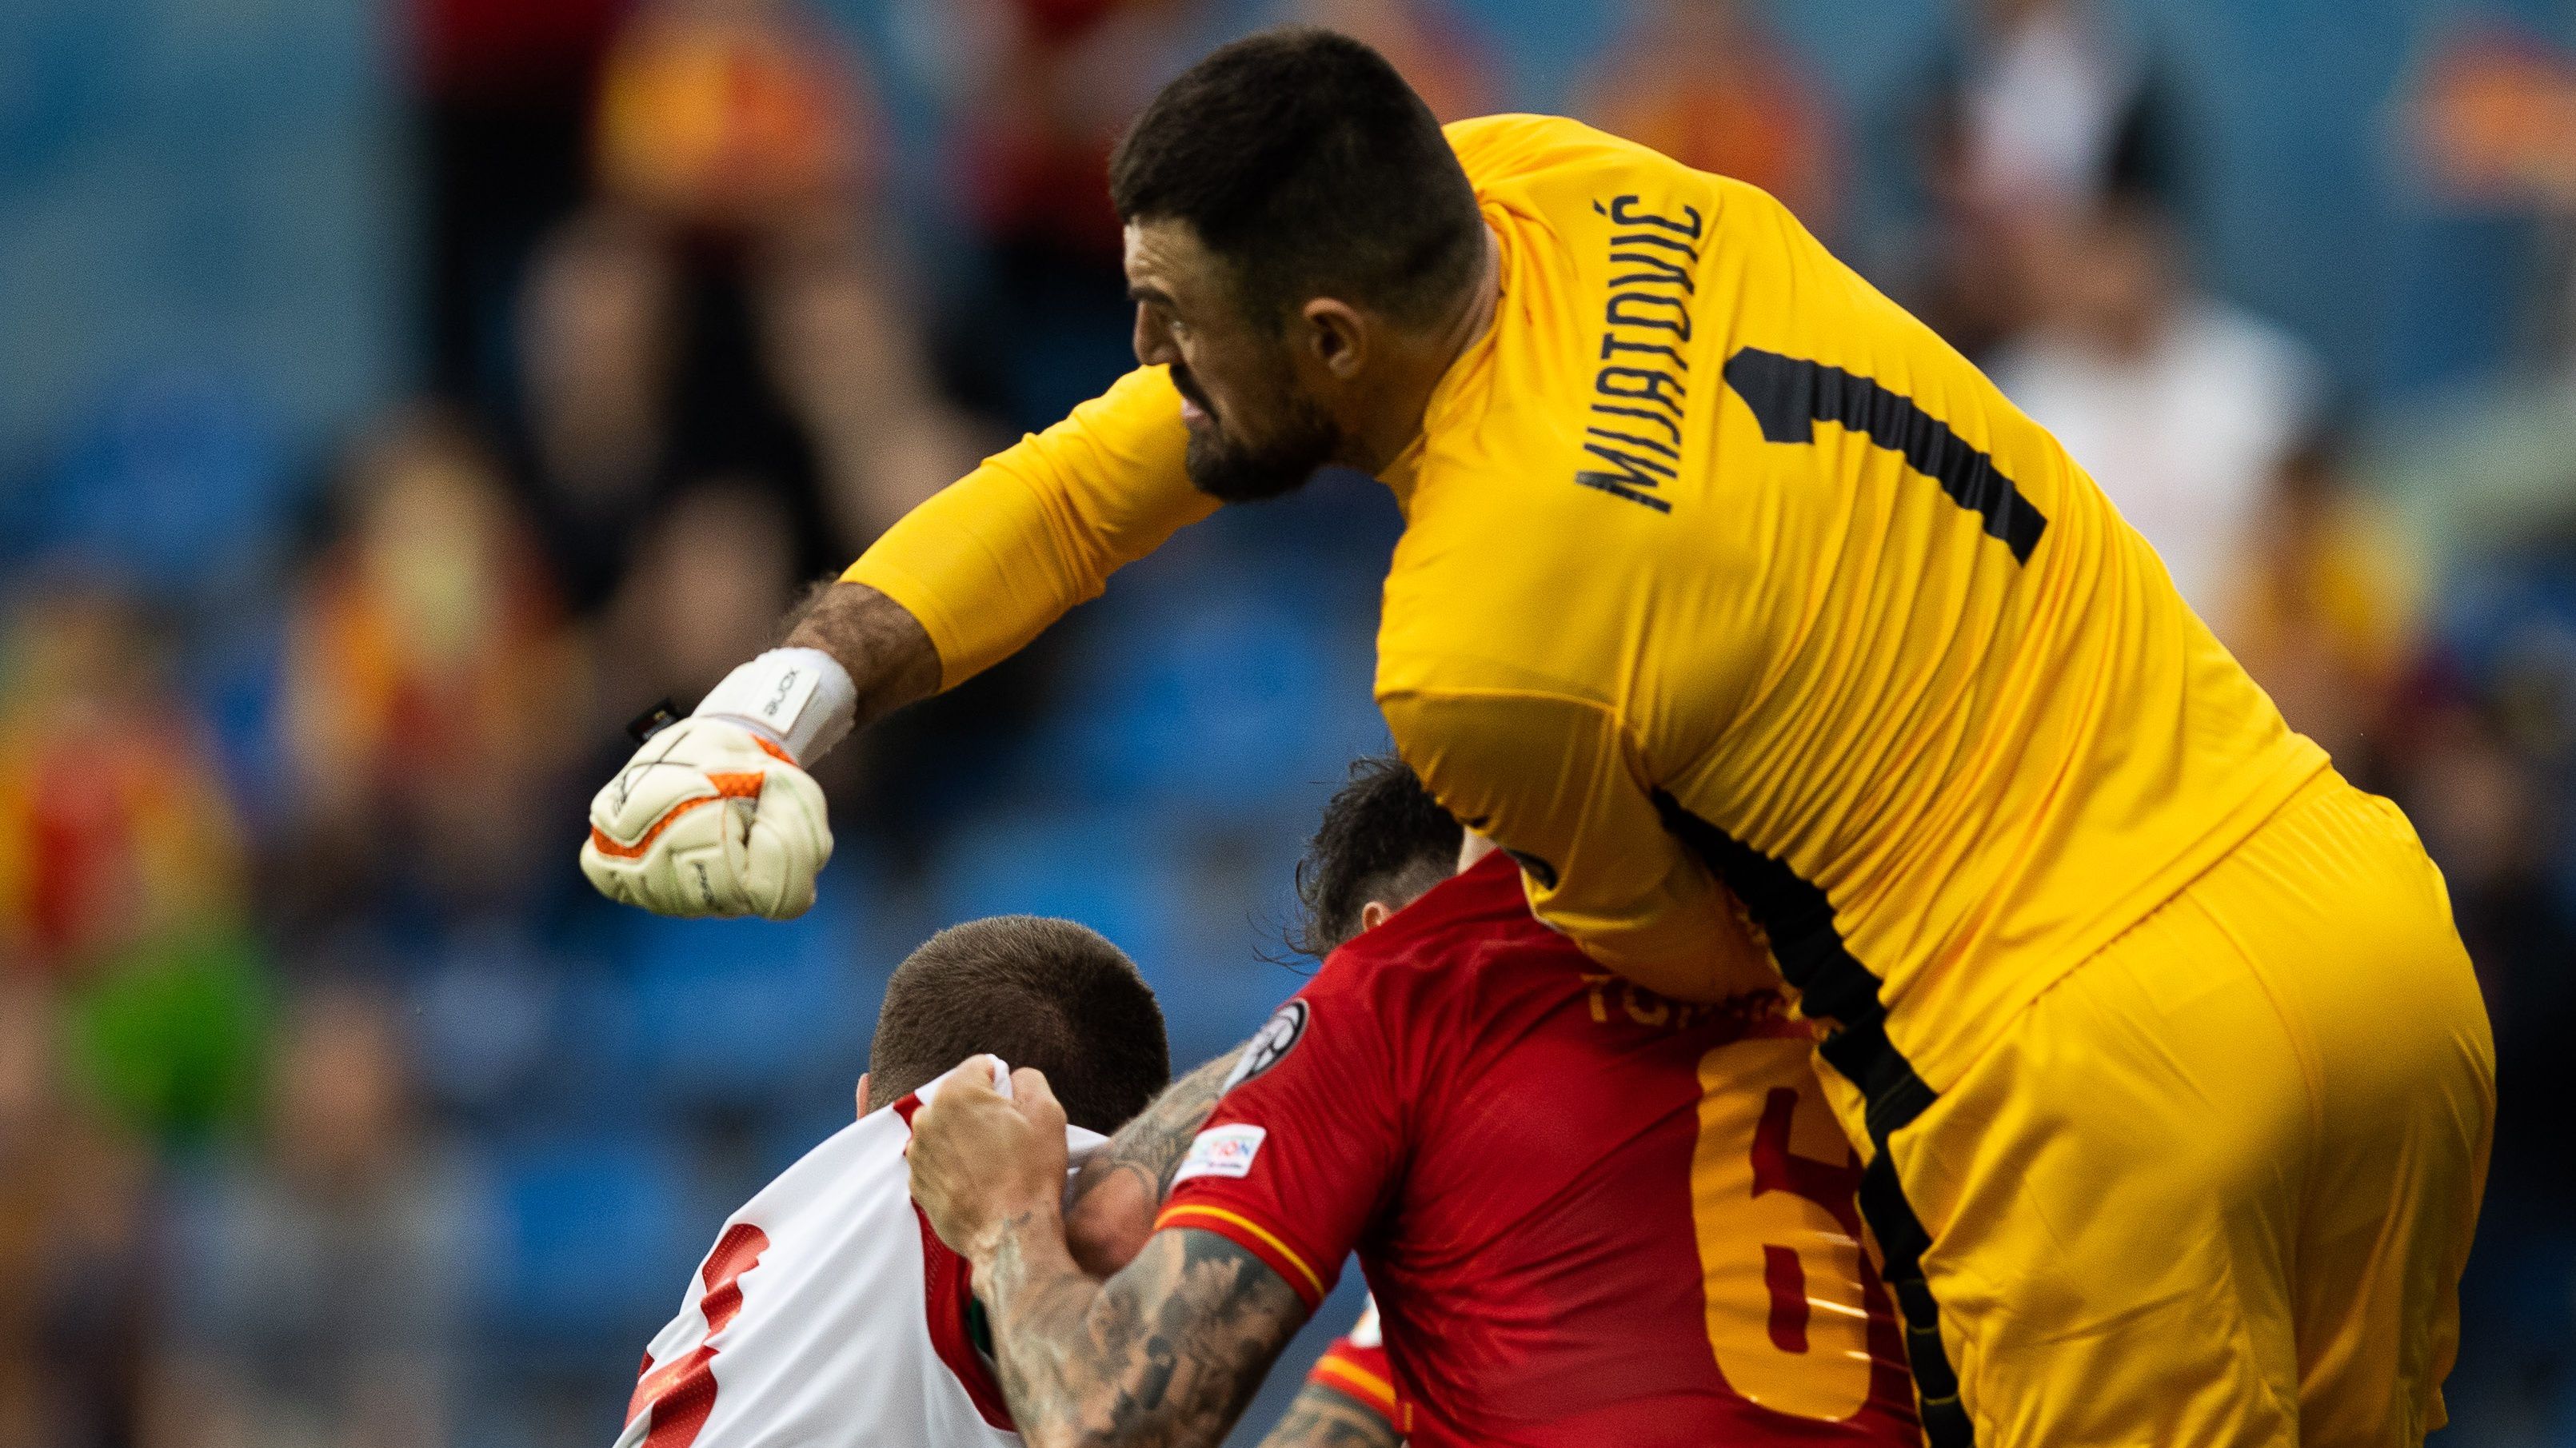 A magyar válogatott elleni pontszerzés után simán kikapott Montenegró